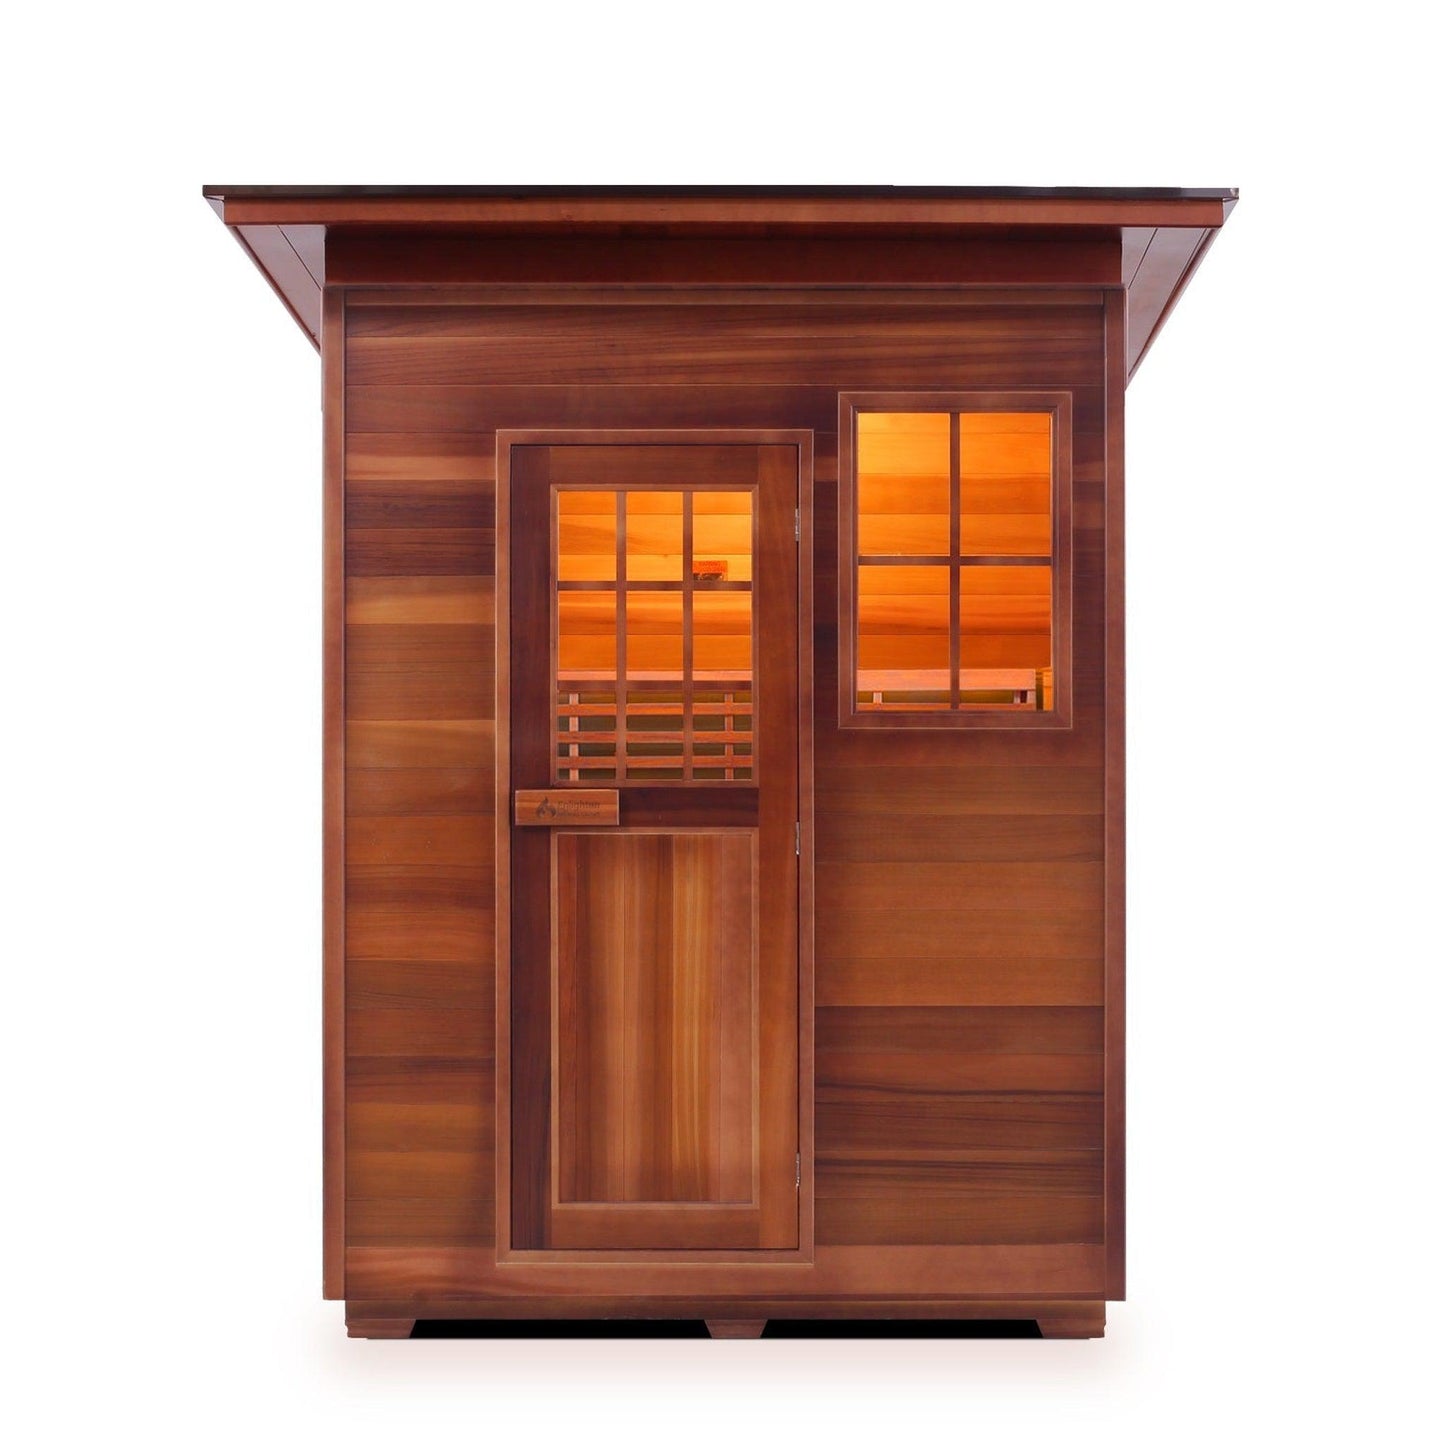 Enlighten SaunaTerra MoonLight 3-Person Slope Roof Dry Traditional Outdoor Sauna